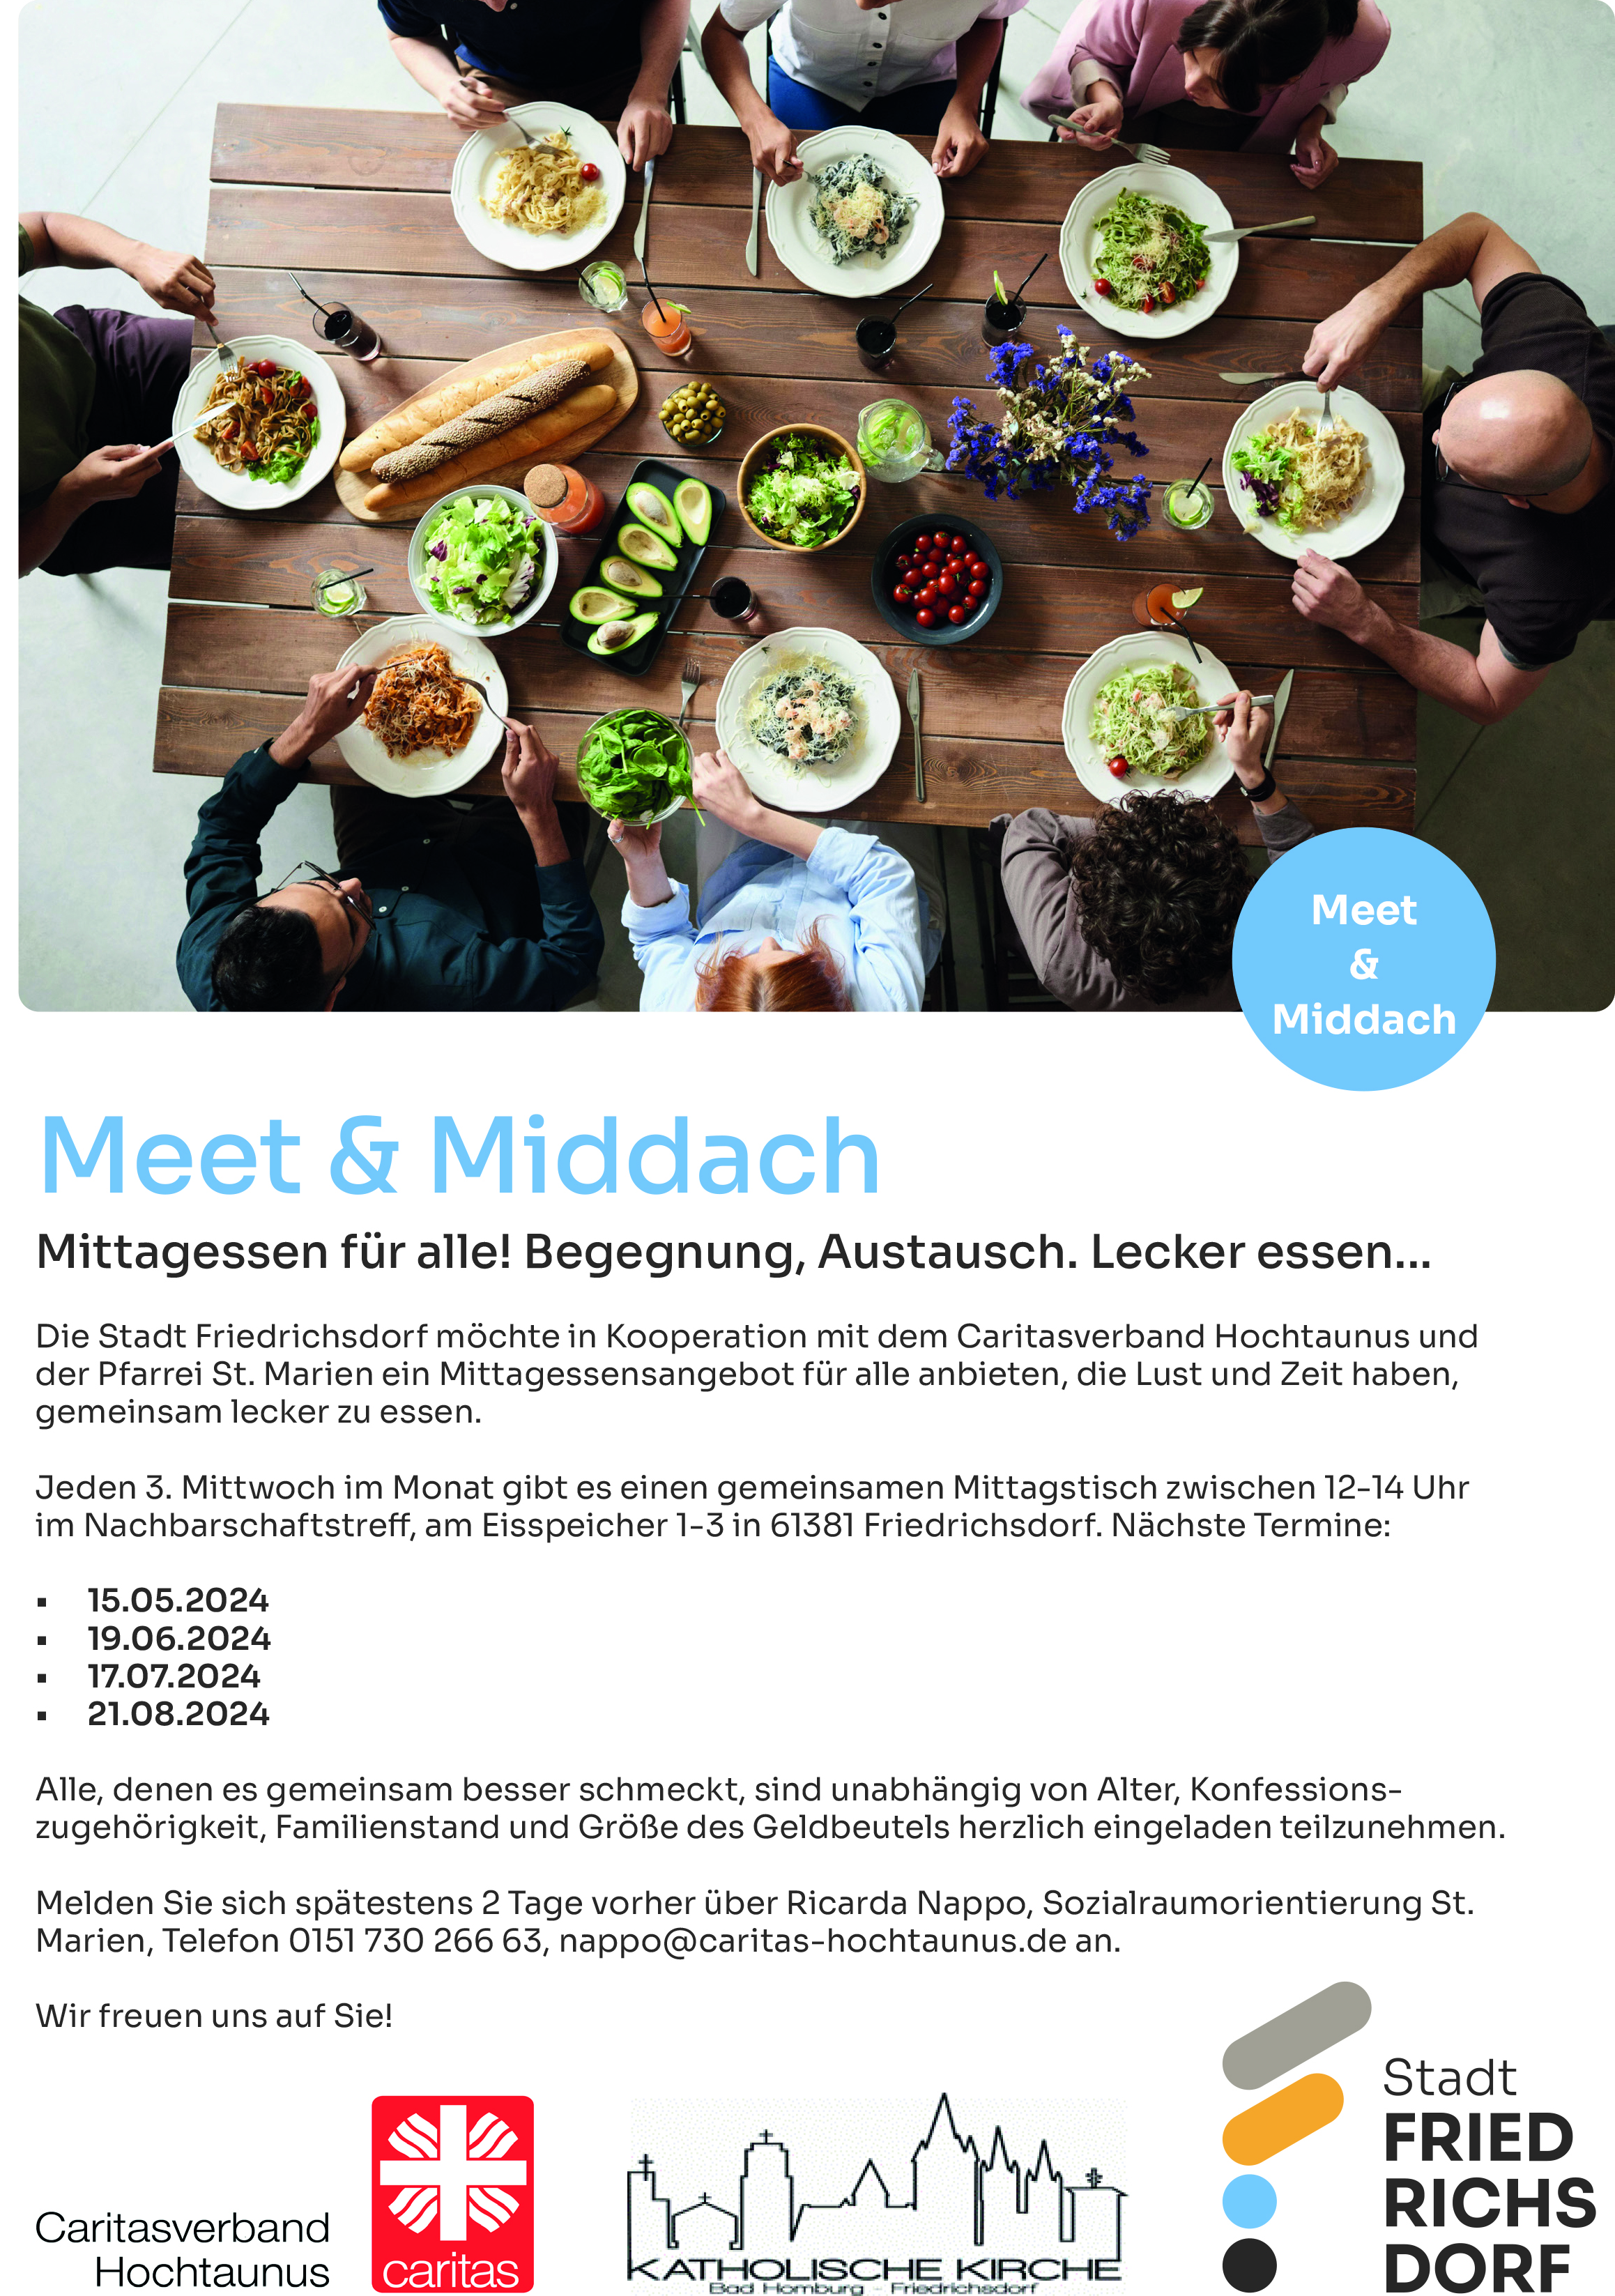 Meet & Middach - Einladung zum gemeinsamen Mittagessen